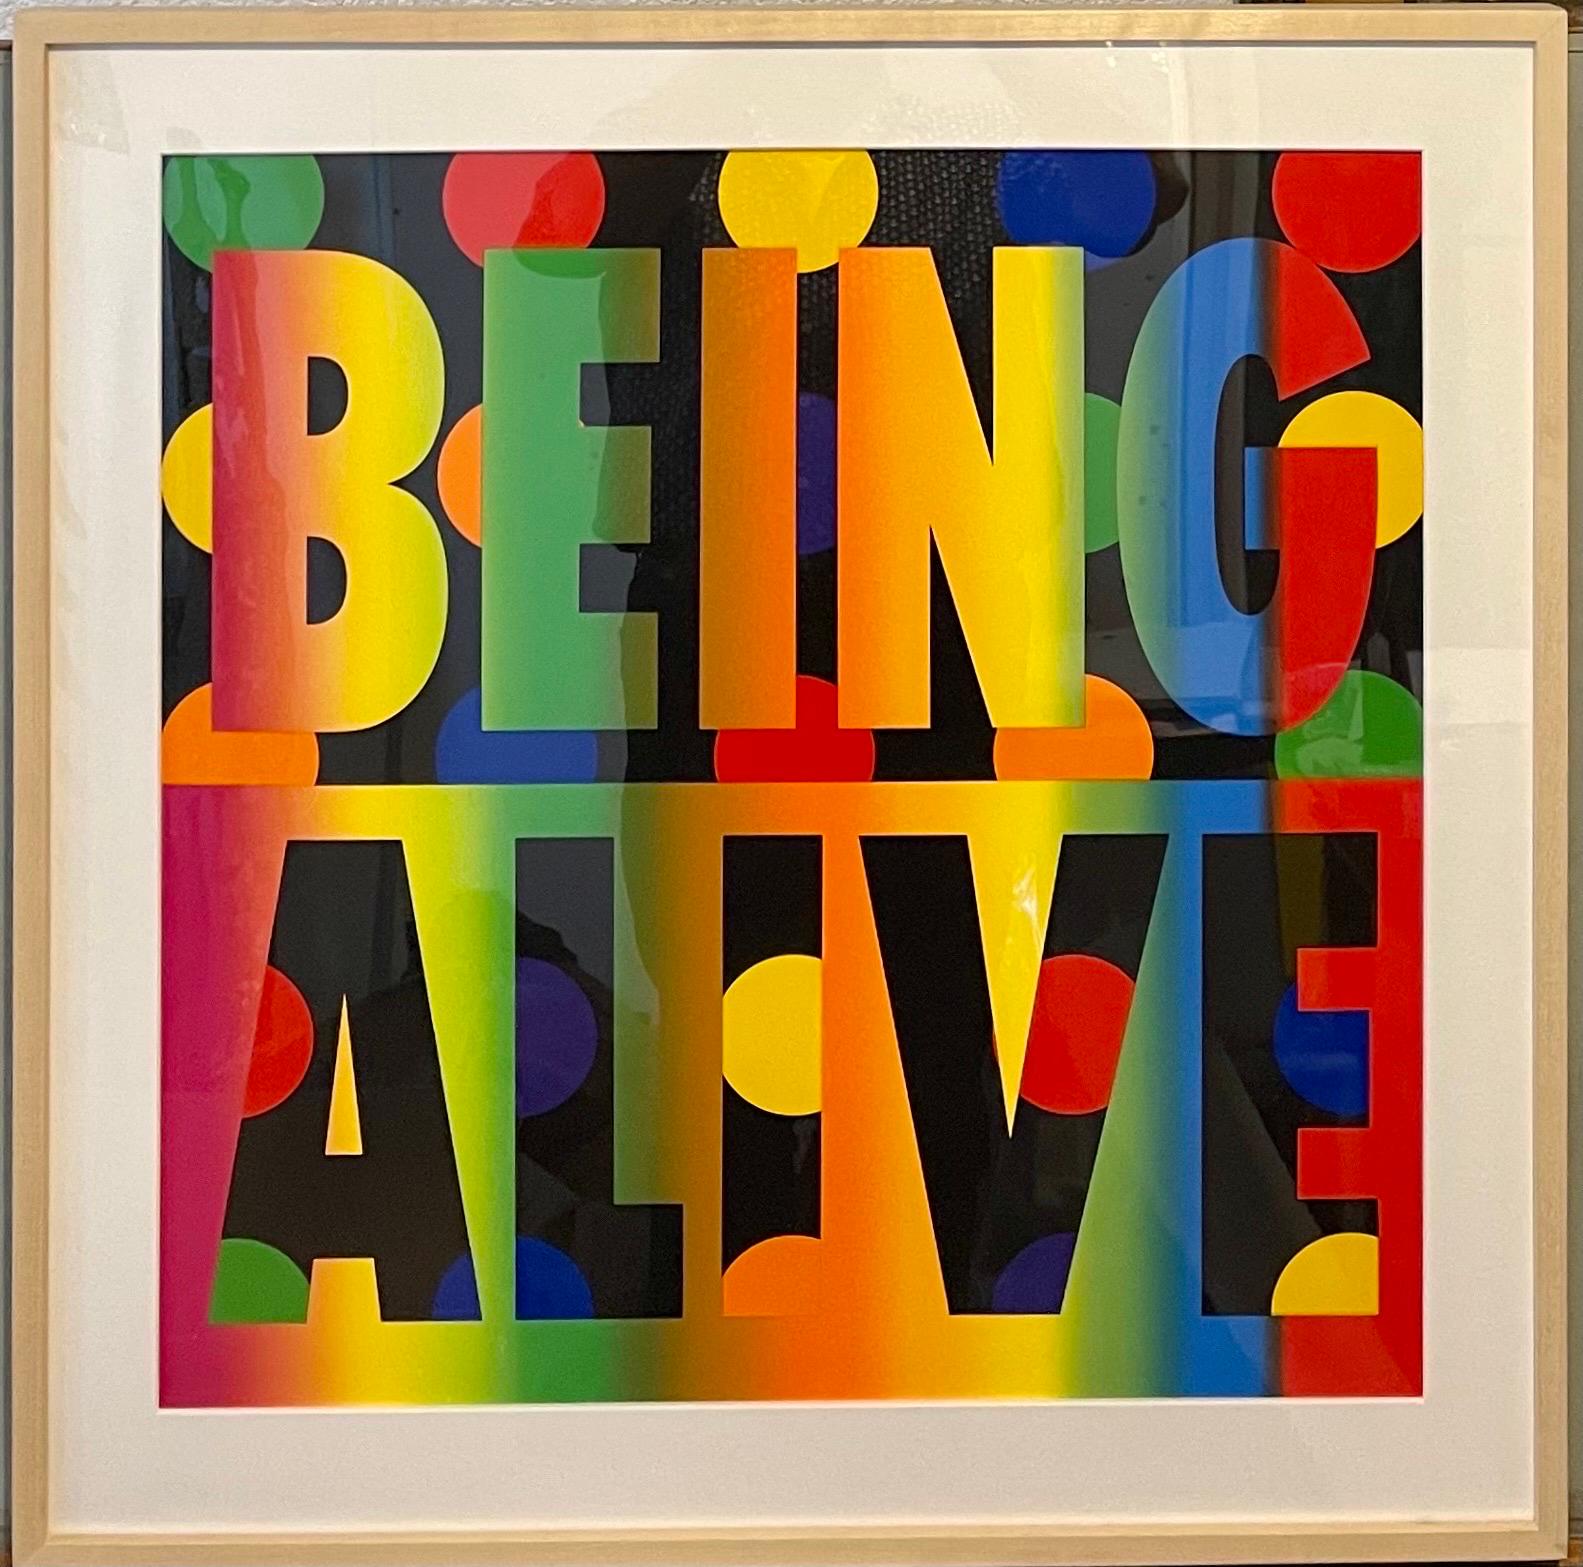 Deborah Kass (née en 1952)
Être vivant, 2012
sérigraphie neuf couleurs, mélange de couleurs sur carton musée 2 plis
Image 24 x 24. Cadre 29 x 29 x 2 pouces
Édition 1/65
Signé à la main et daté au crayon, en bas à droite au verso ; numéroté en bas à